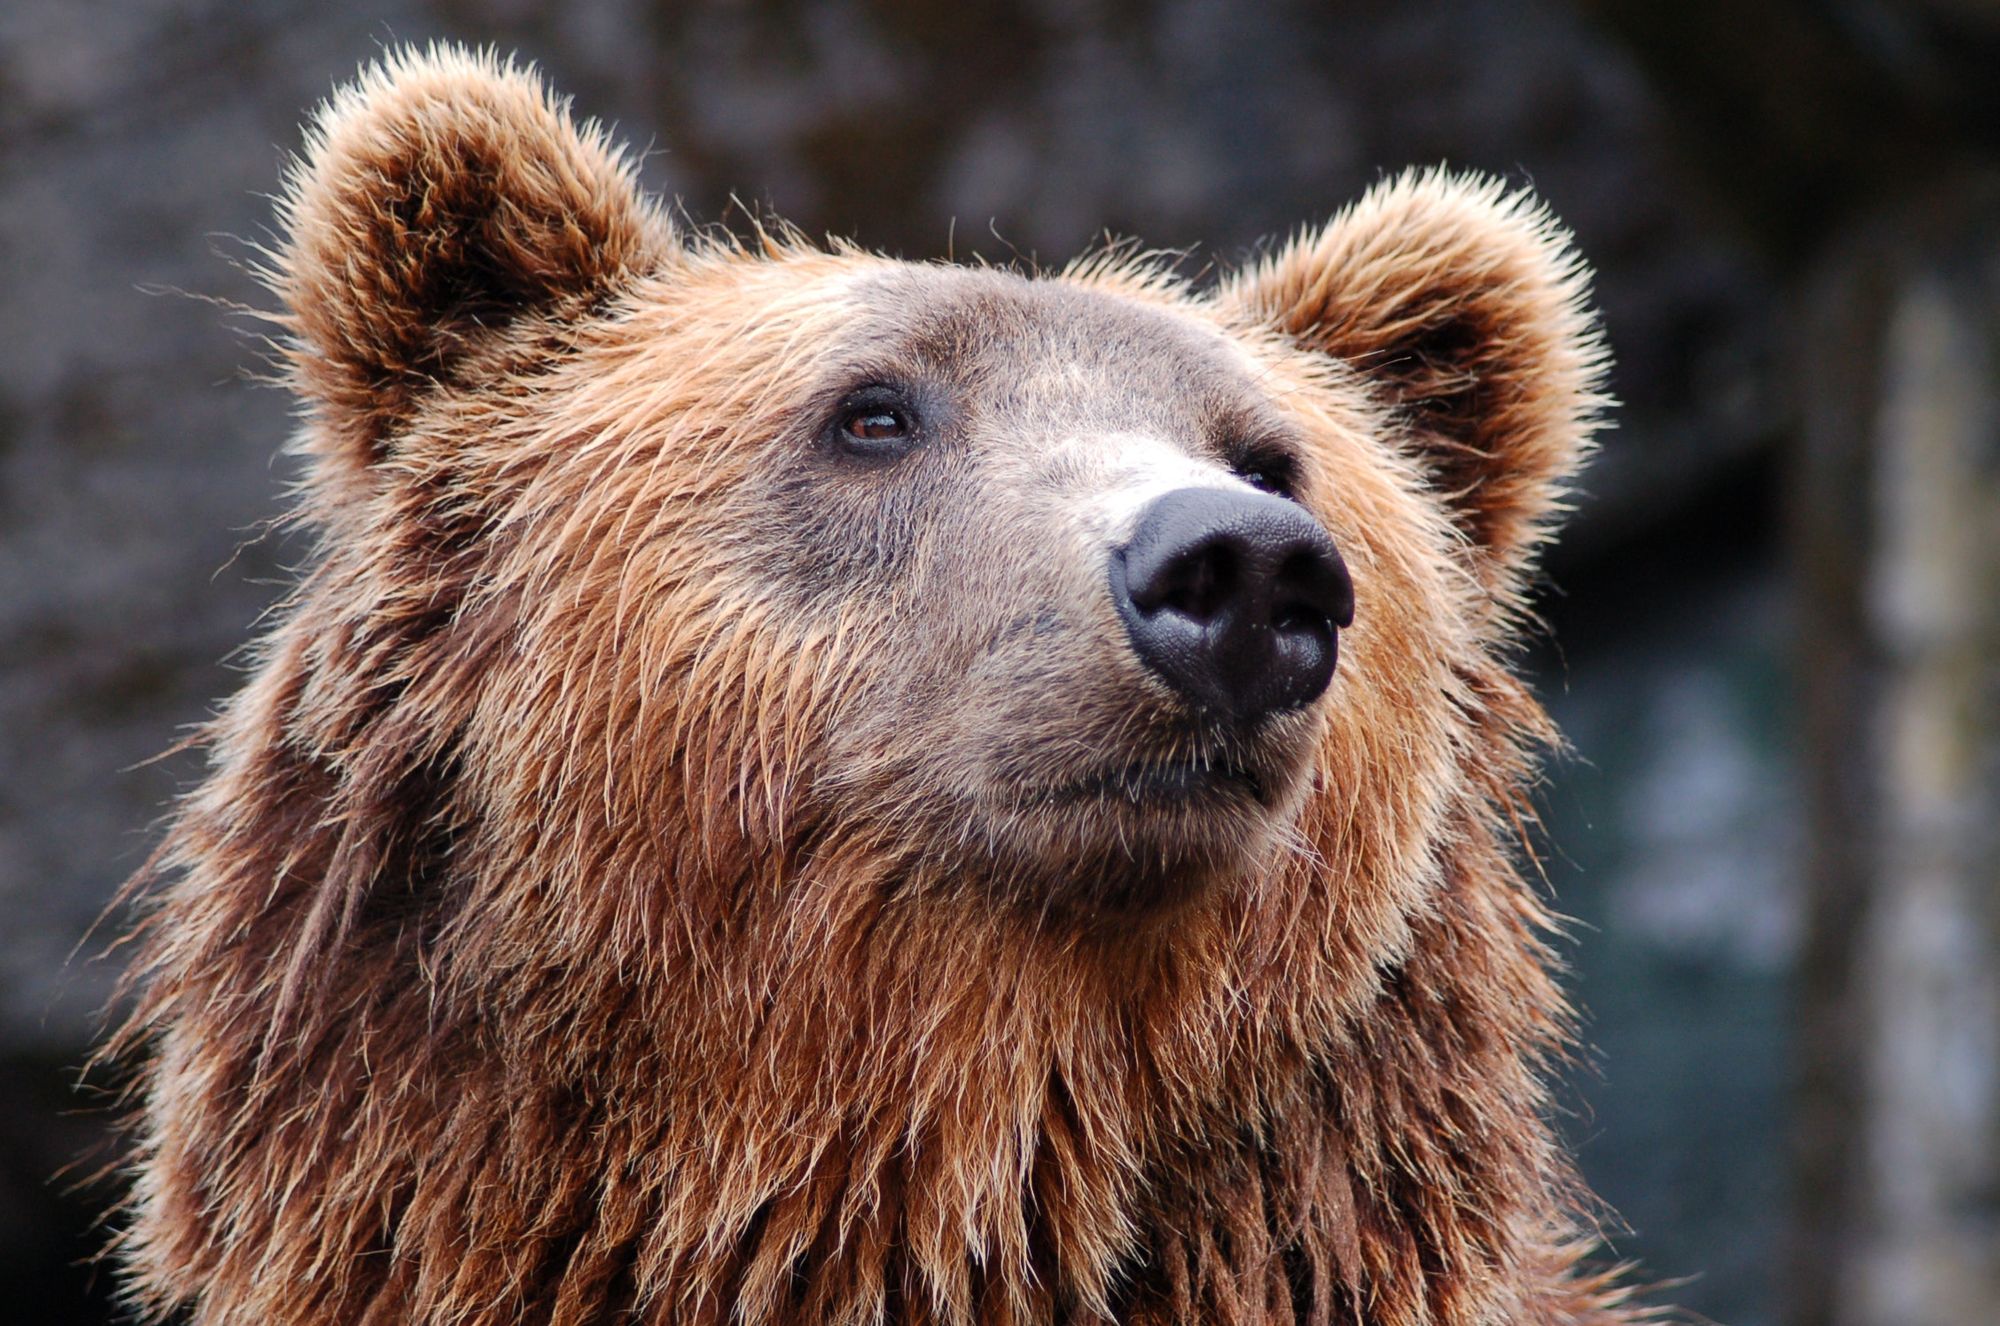 Zkoumání mikrobiomu divokých medvědů může pomoci v boji proti antibiotické rezistenci